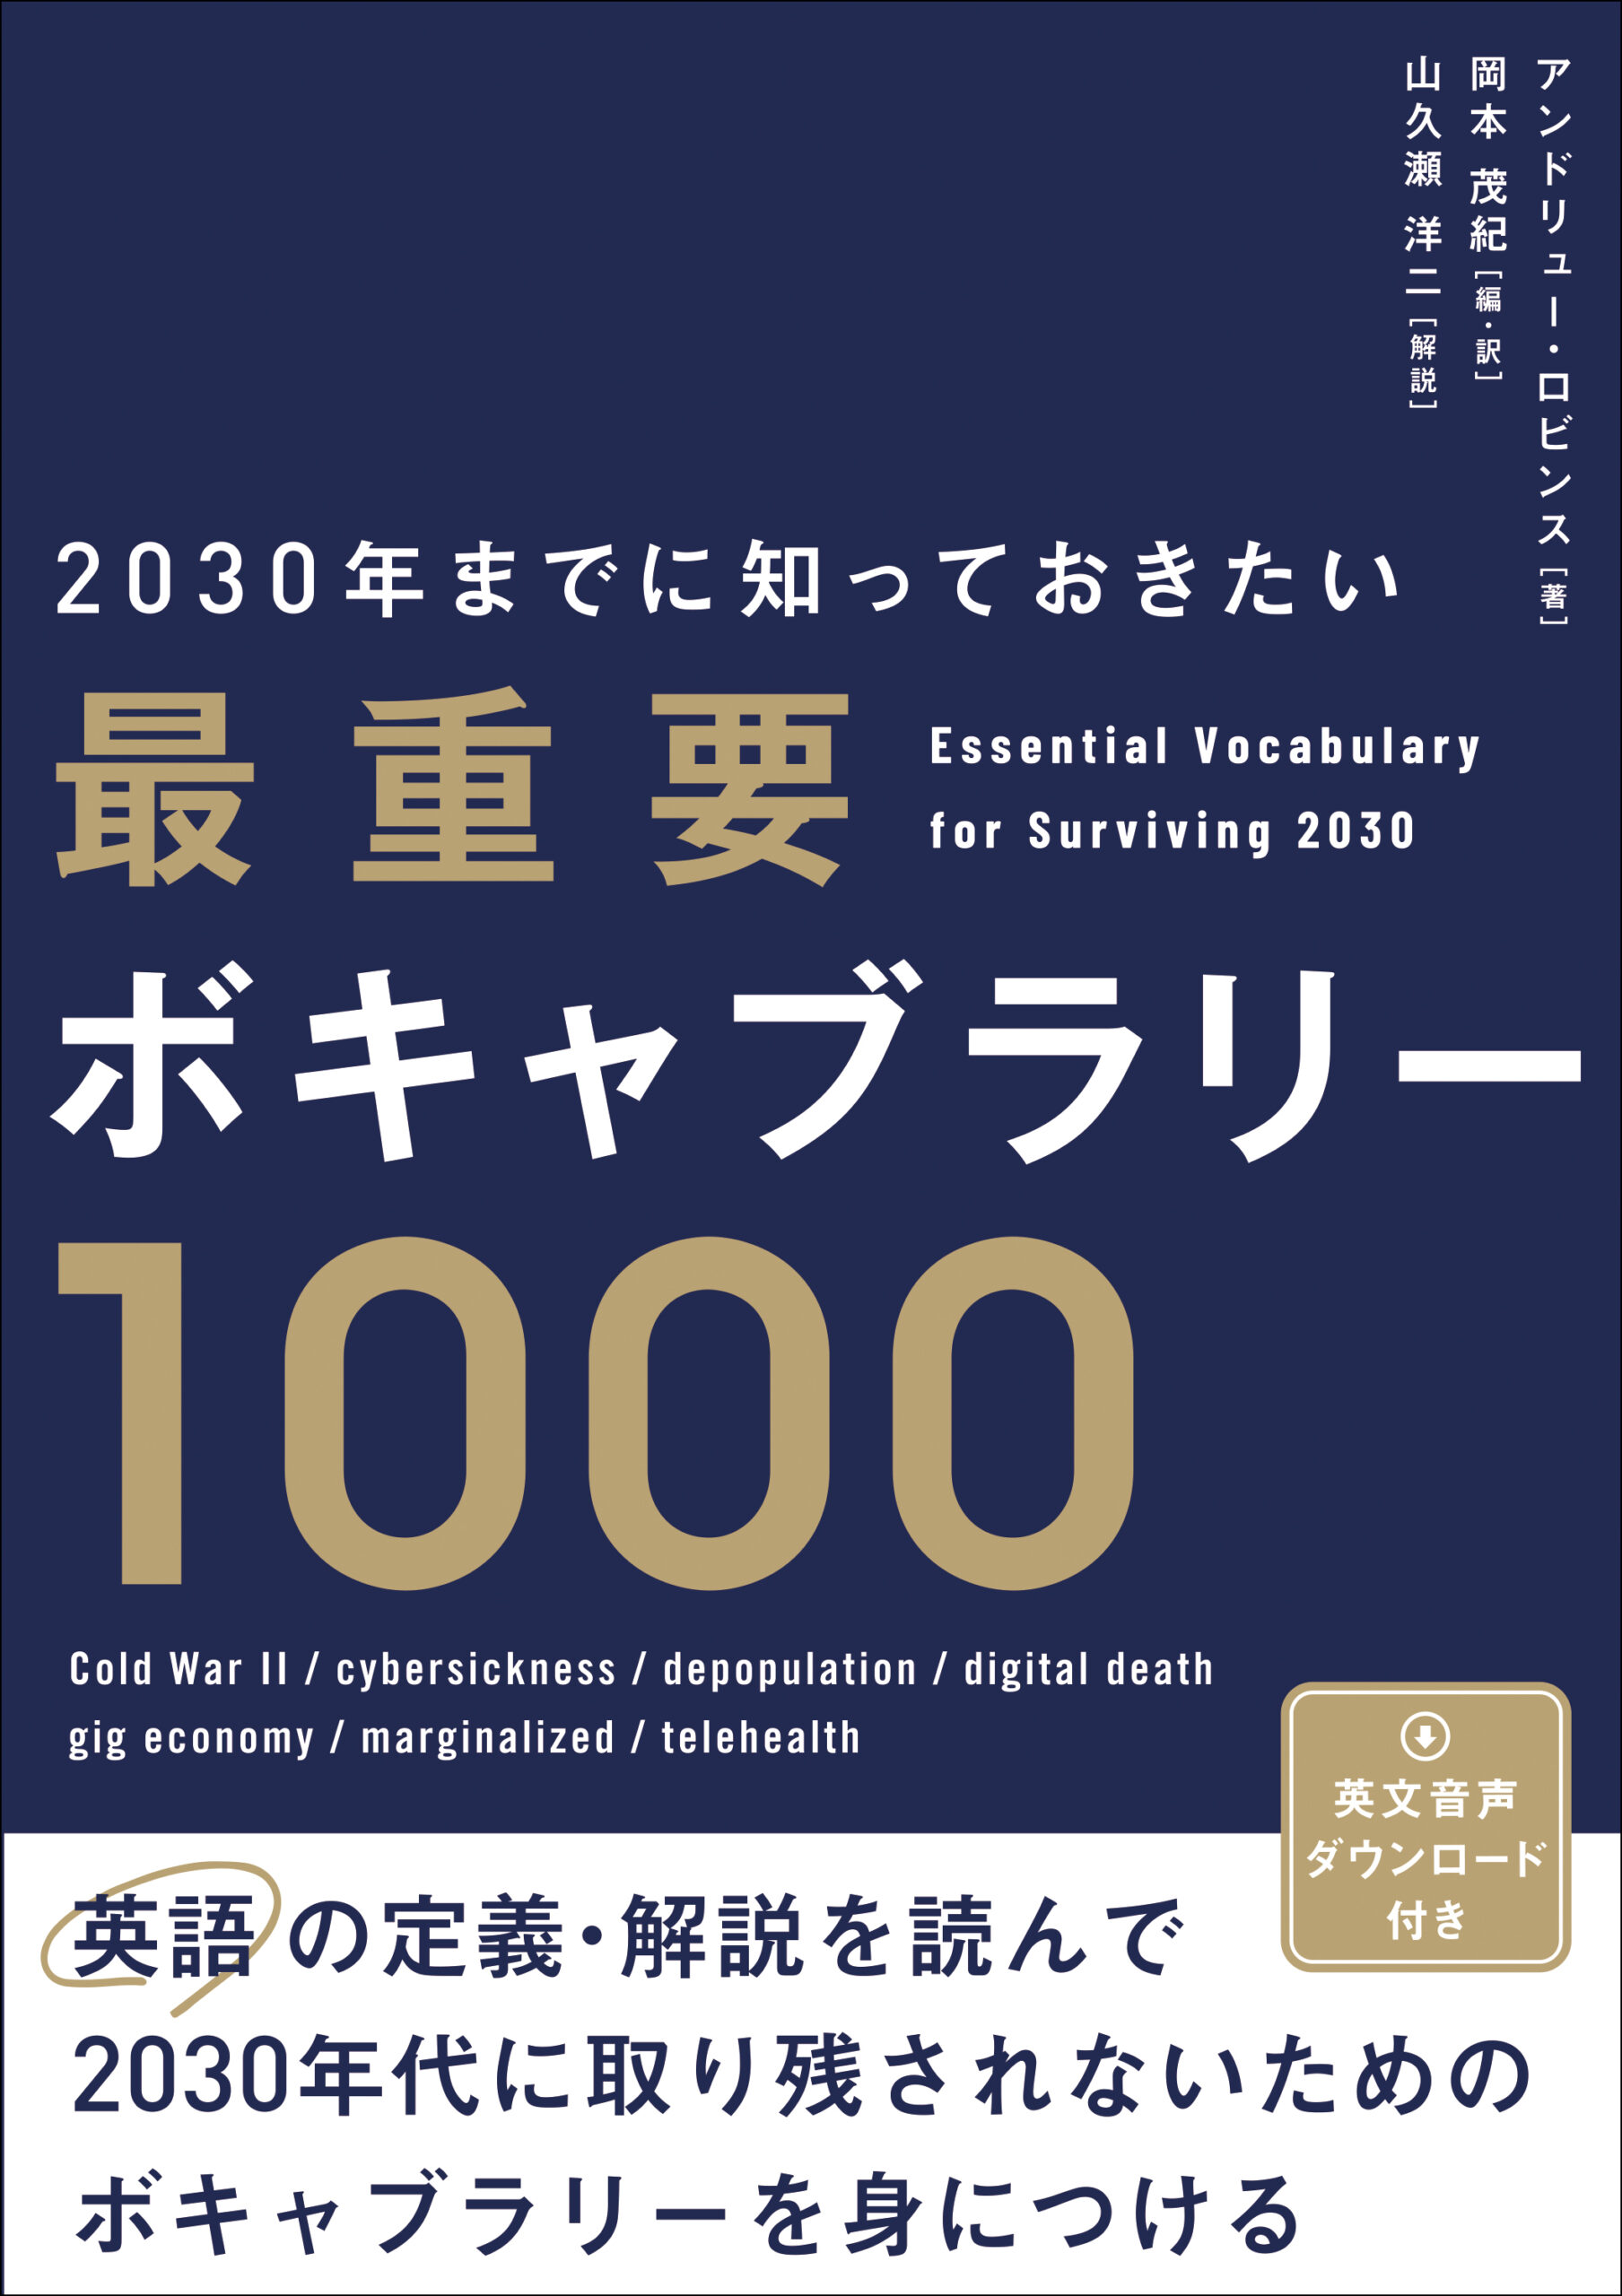 『2030年までに知っておきたい 最重要ボキャブラリー1000』アンドリュー・ロビンス (著)、岡本茂紀 (編・訳)